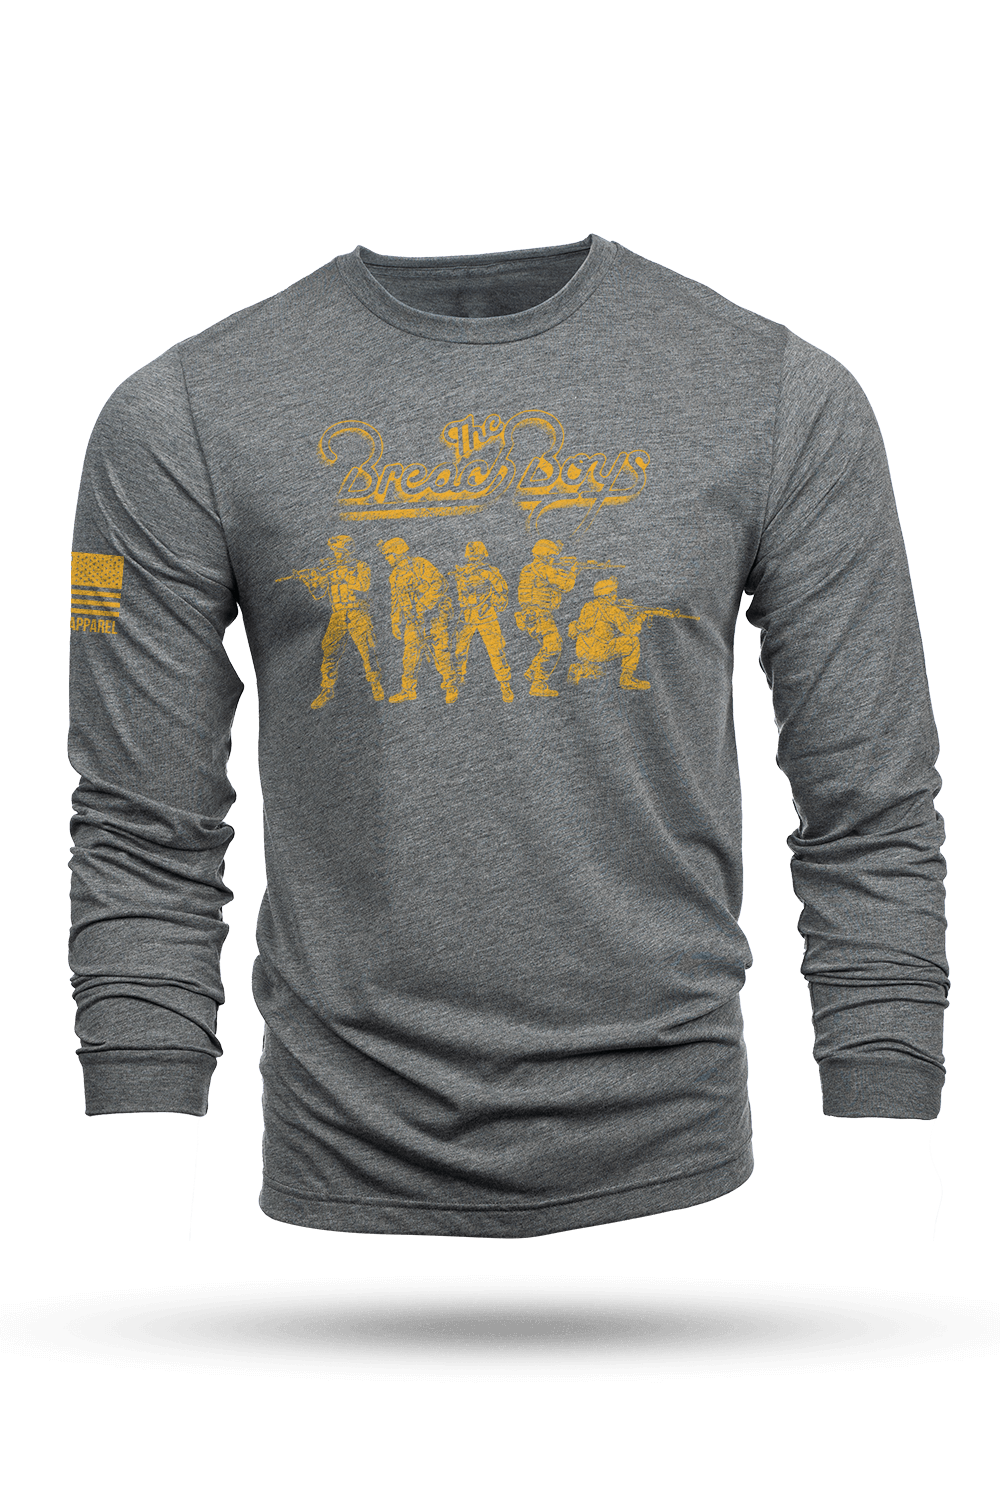 Long-Sleeve Shirt - The Breach Boys